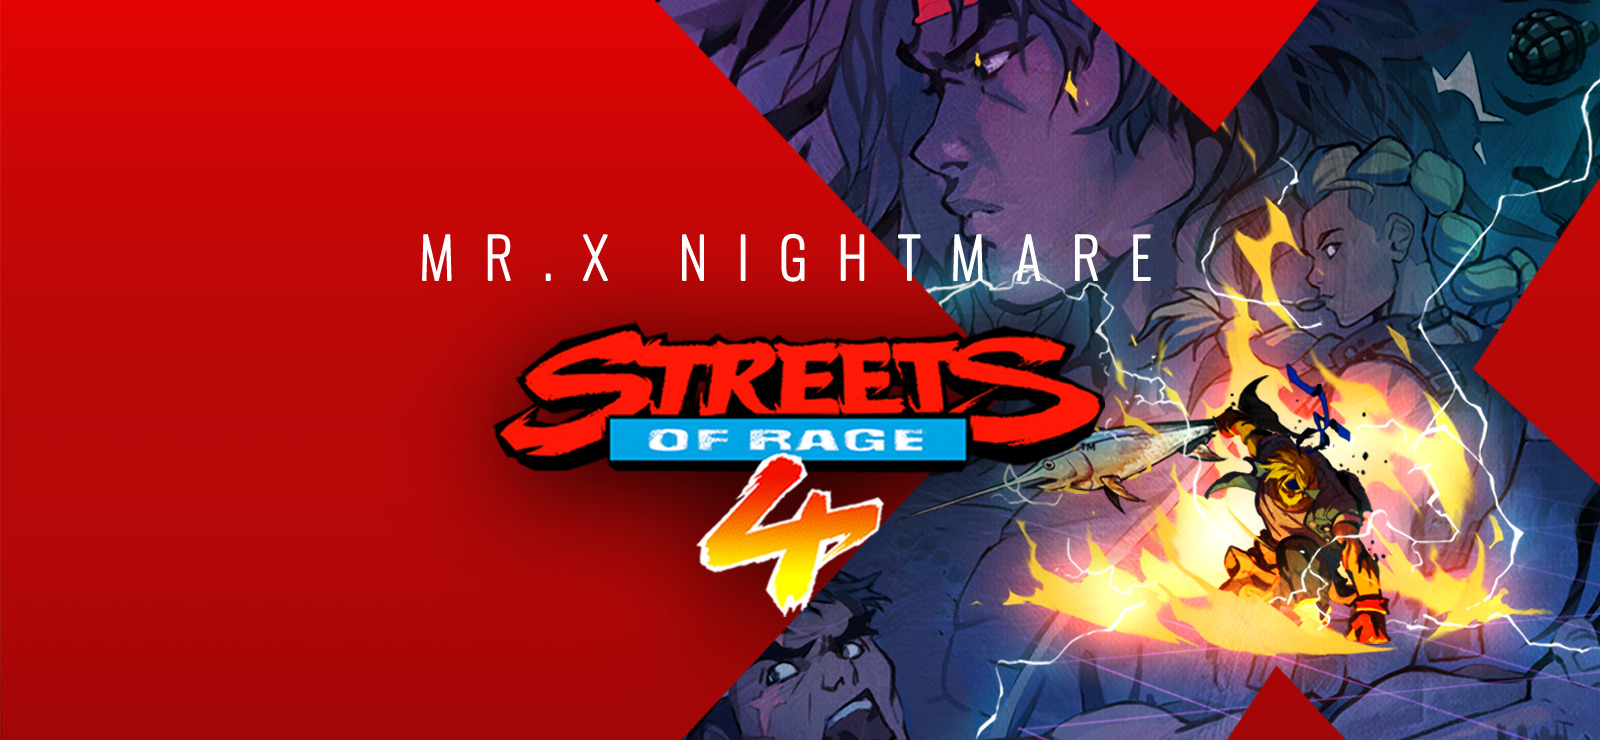 Mr. X - Streets of Rage 2  Movie artwork, Rage art, Rage